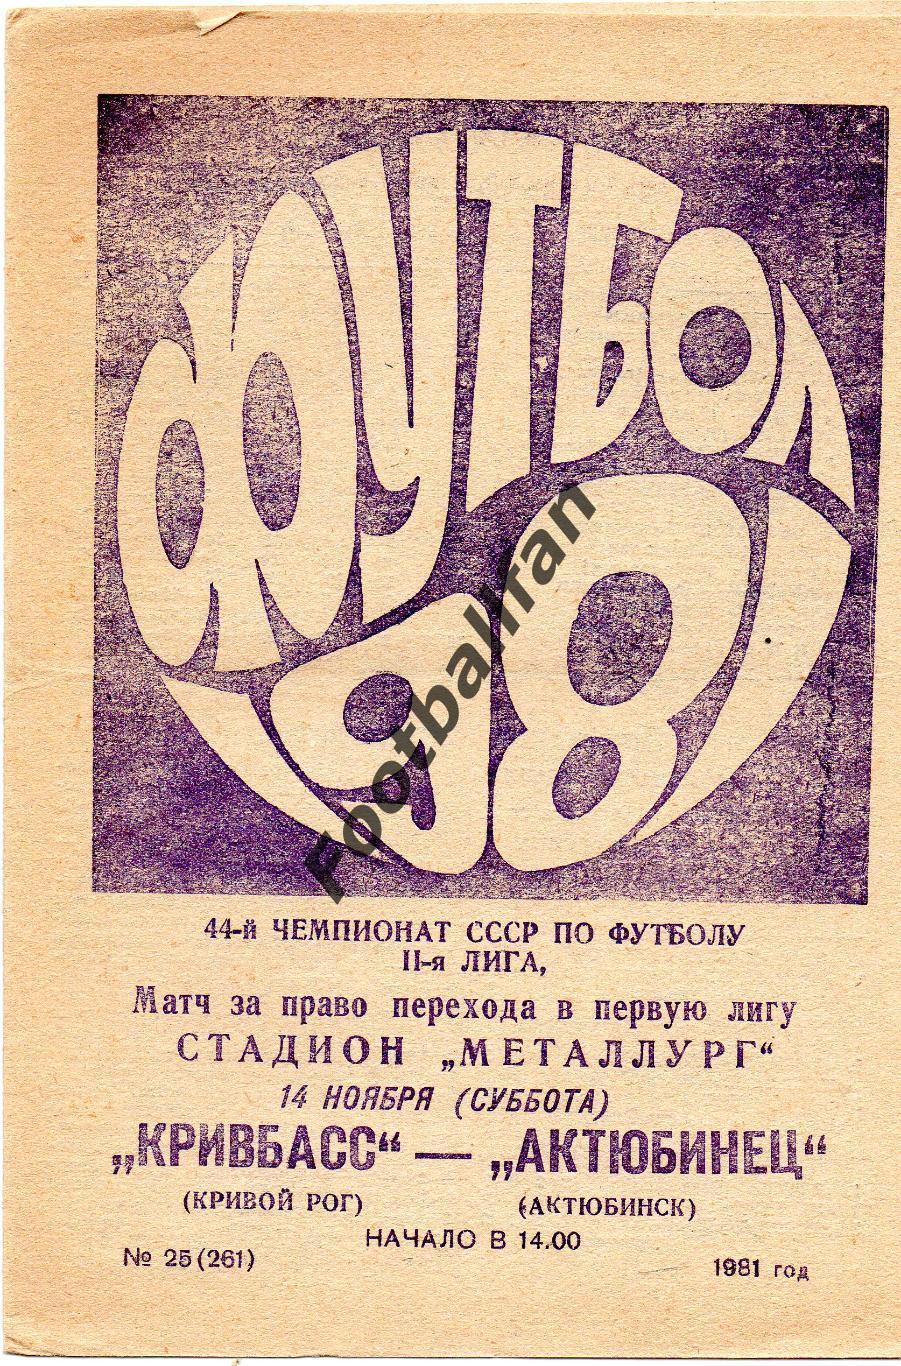 Кривбасс Кривой Рог - Актюбинец Актюбинск 14.11.1981